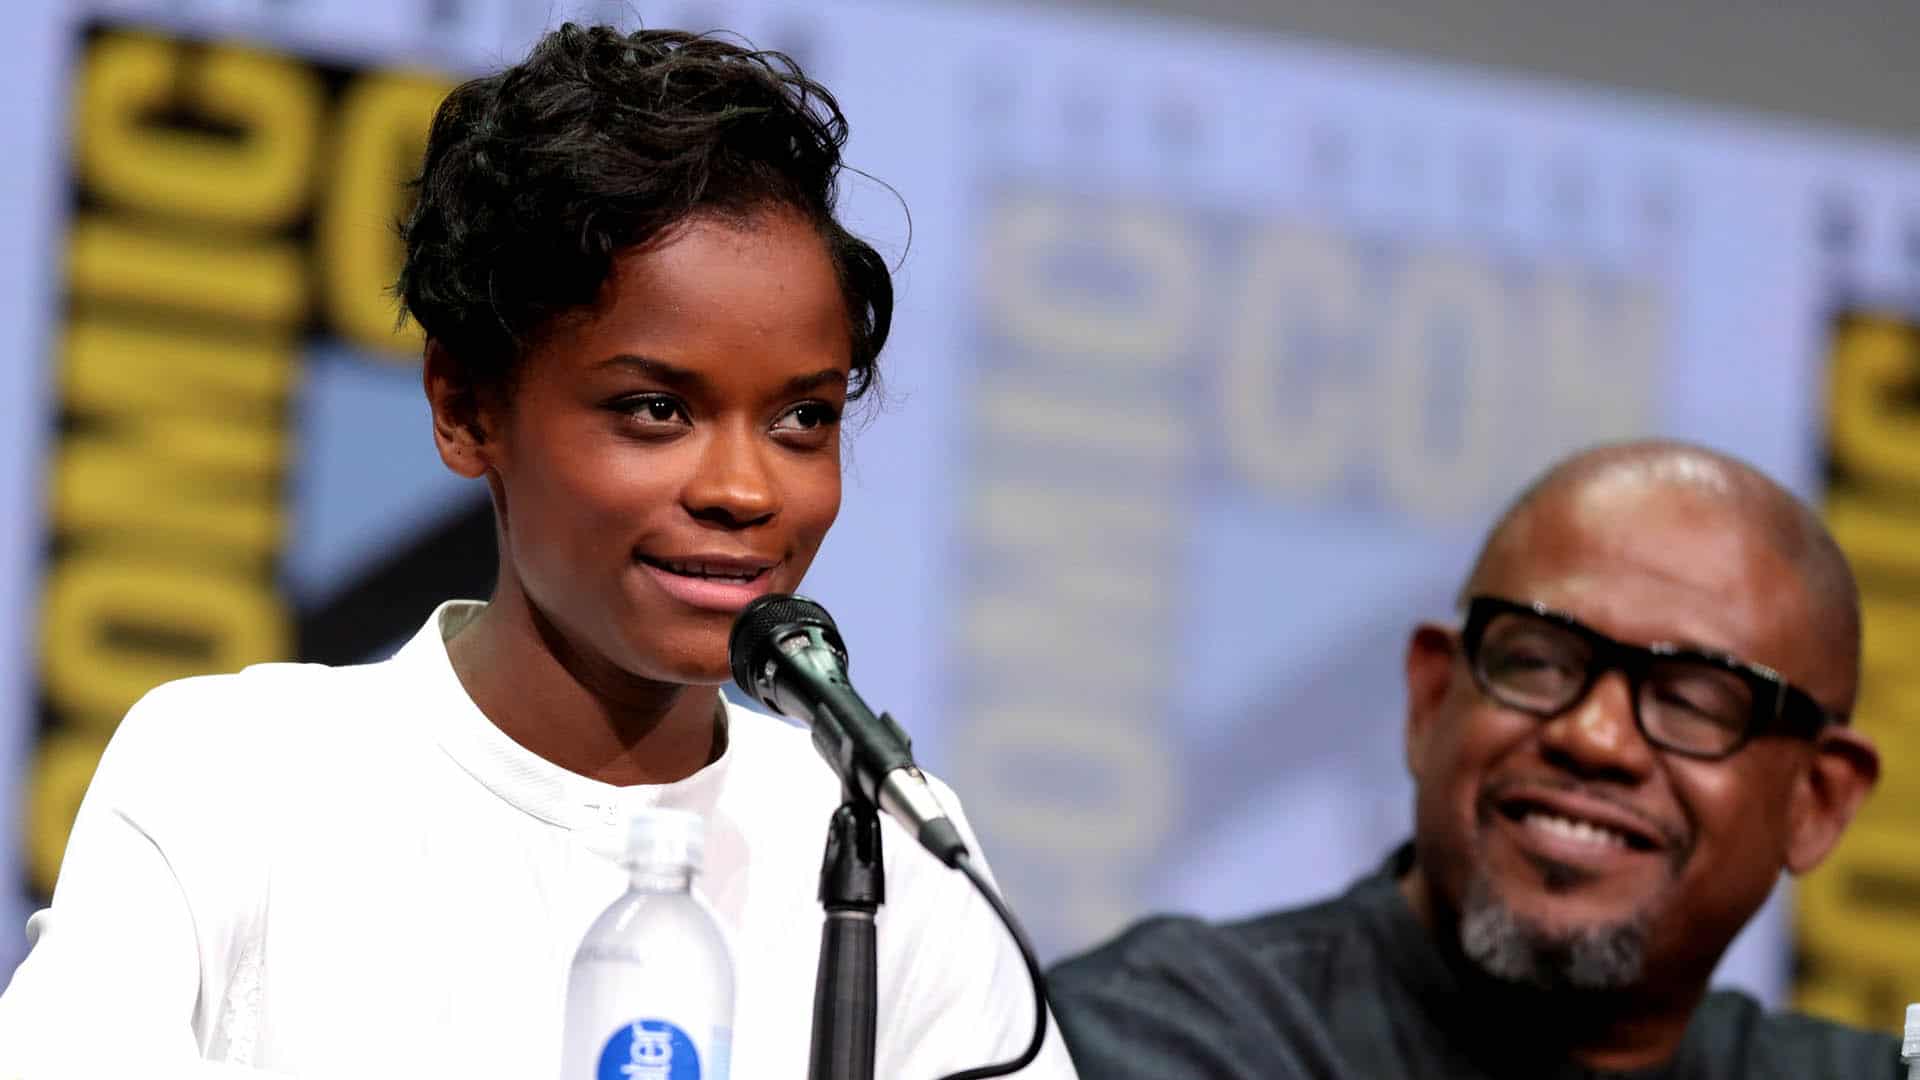 Letitia Wright ist bekannt aus dem Oscar-prämierten Science-Fiction-Film „Black Panther“. Auf Instagram sprach sie in einem Video über ihren Glauben.